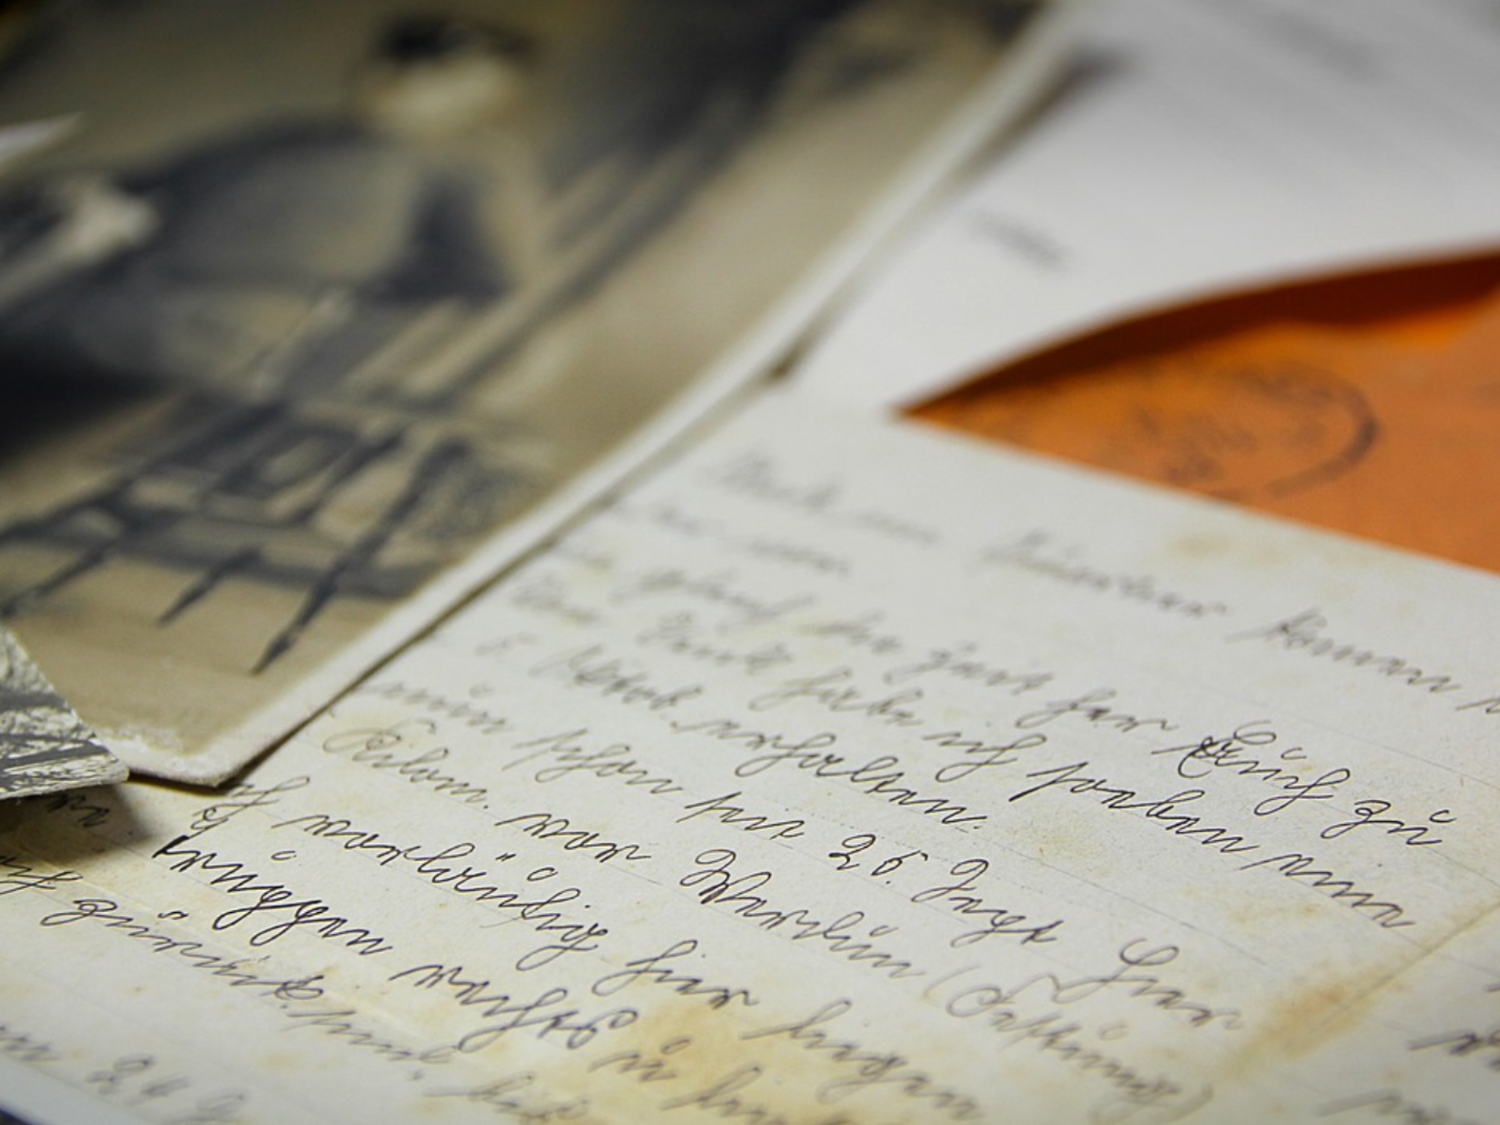 Une veuve reçoit une lettre de son mari 76 ans après (Photo)